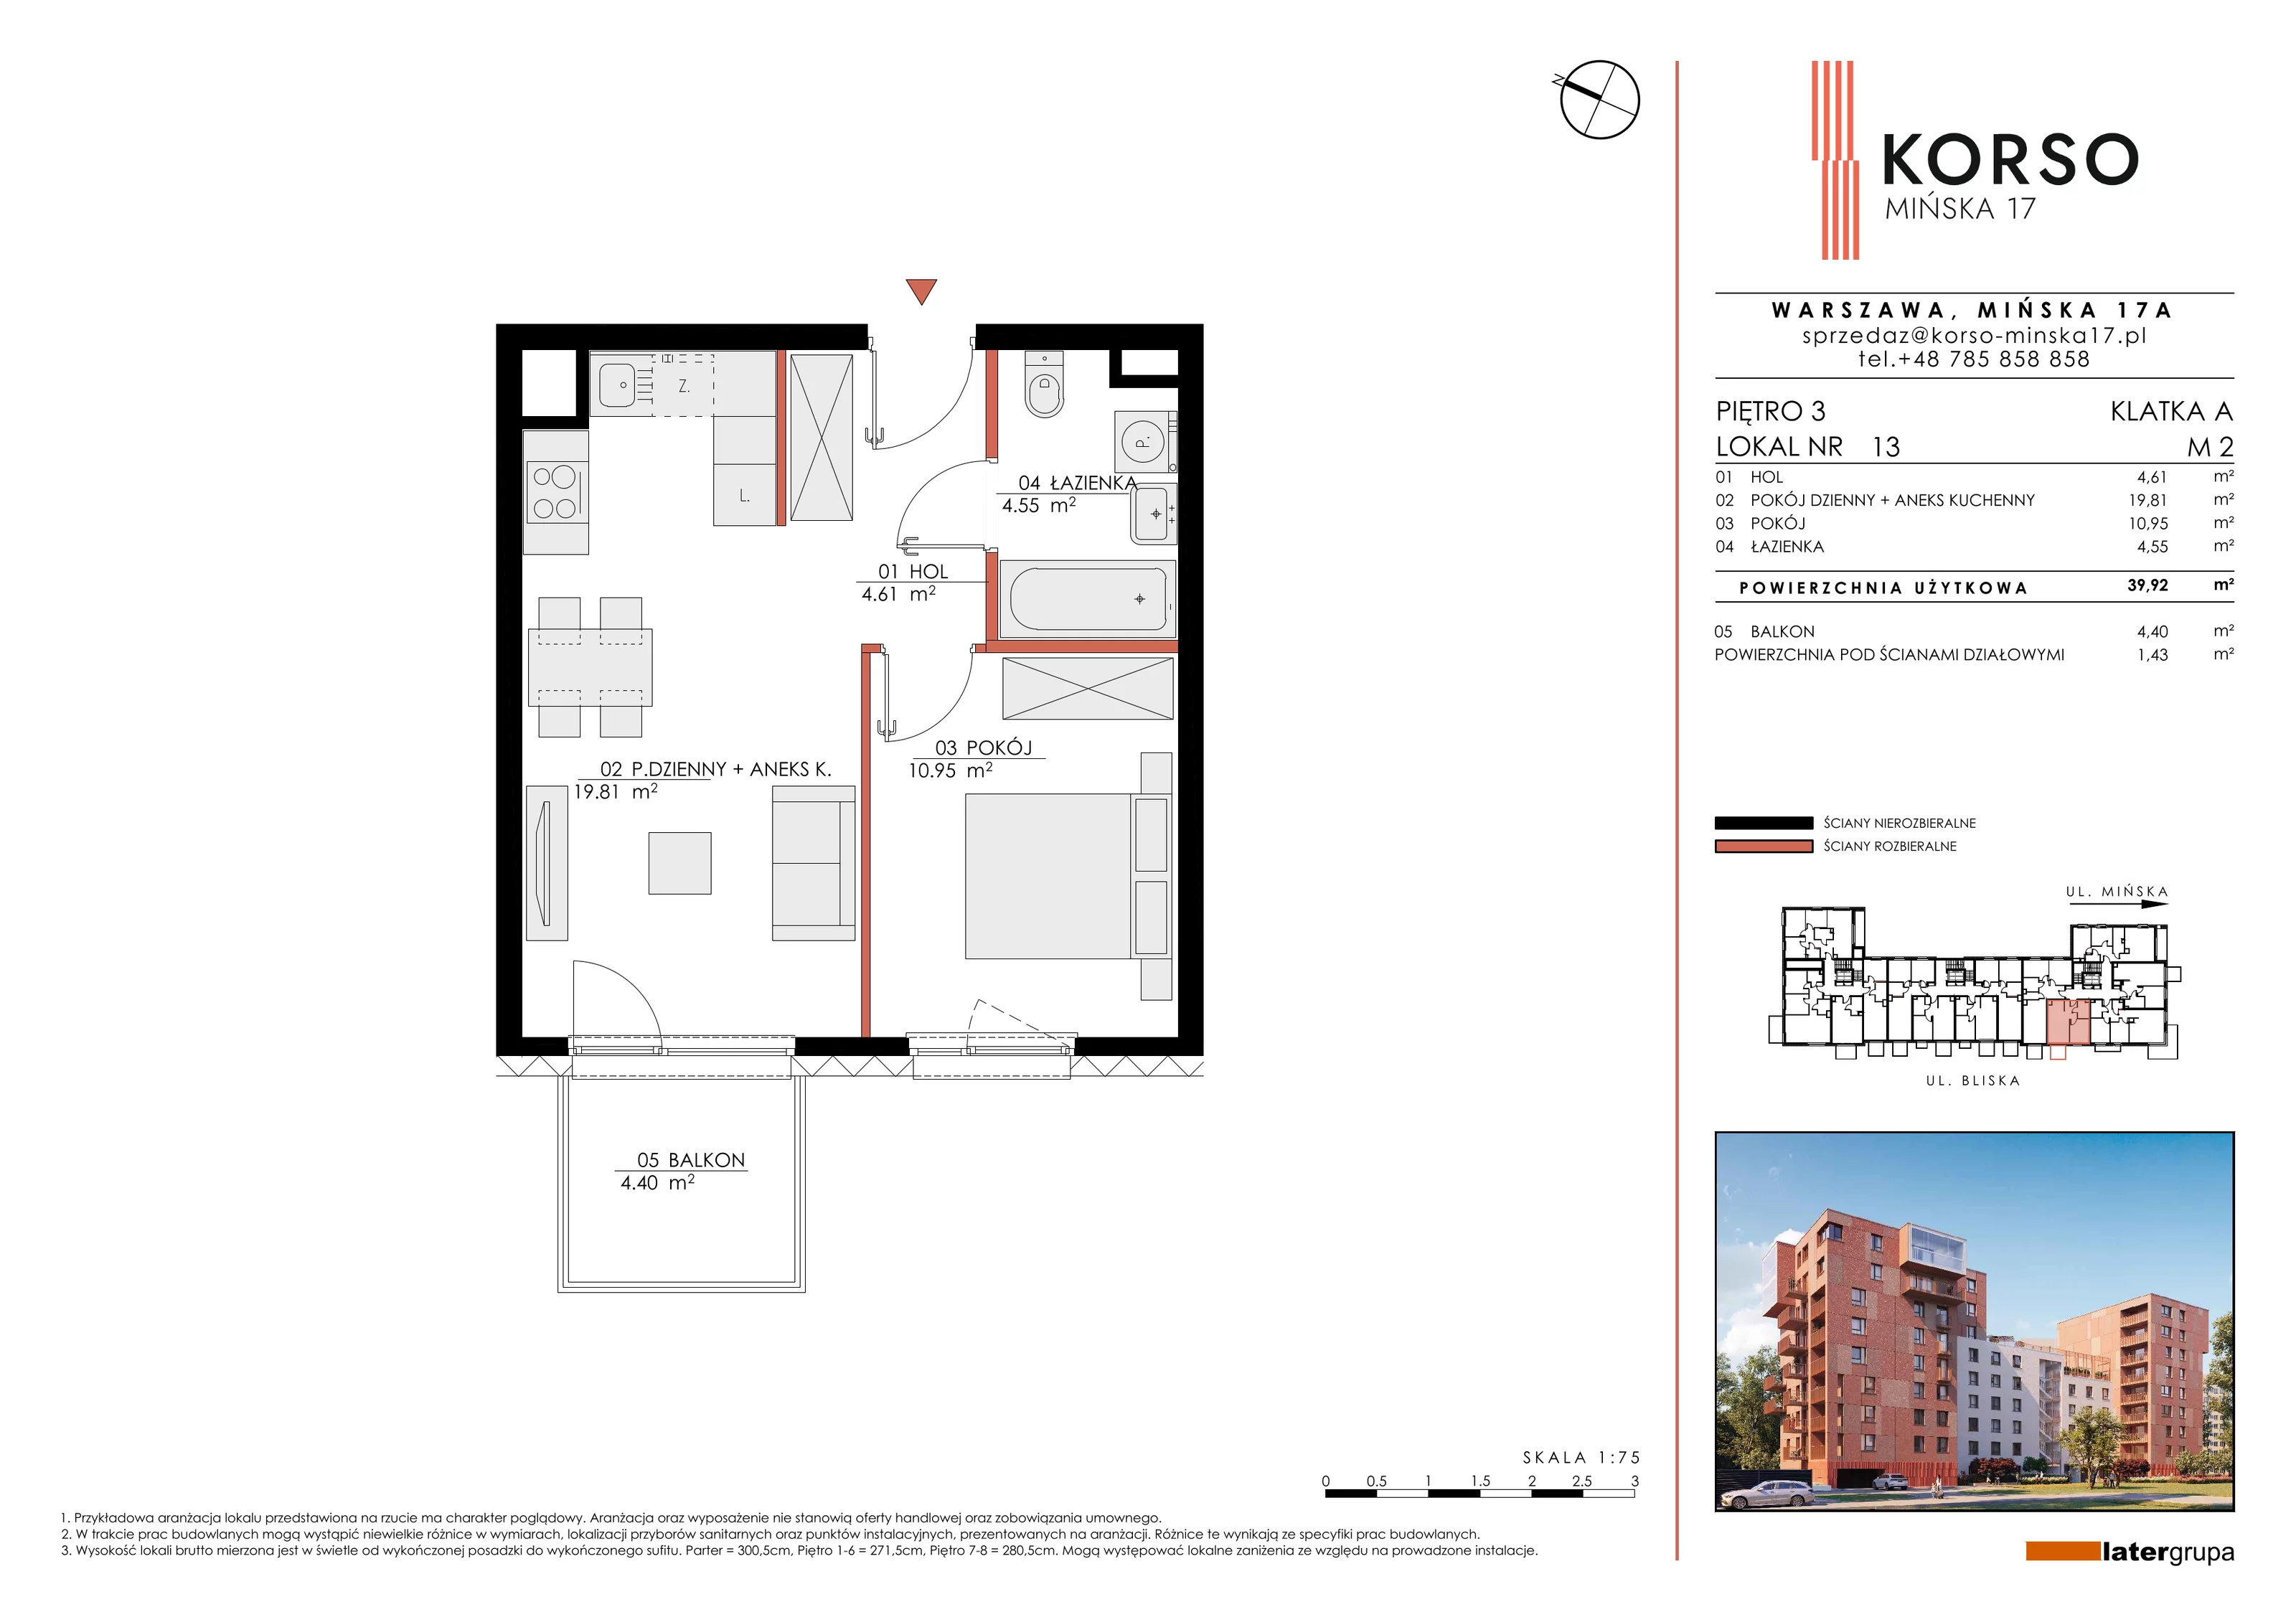 Mieszkanie 39,92 m², piętro 3, oferta nr 13, KORSO Mińska 17, Warszawa, Praga Południe, Kamionek, ul. Mińska 17